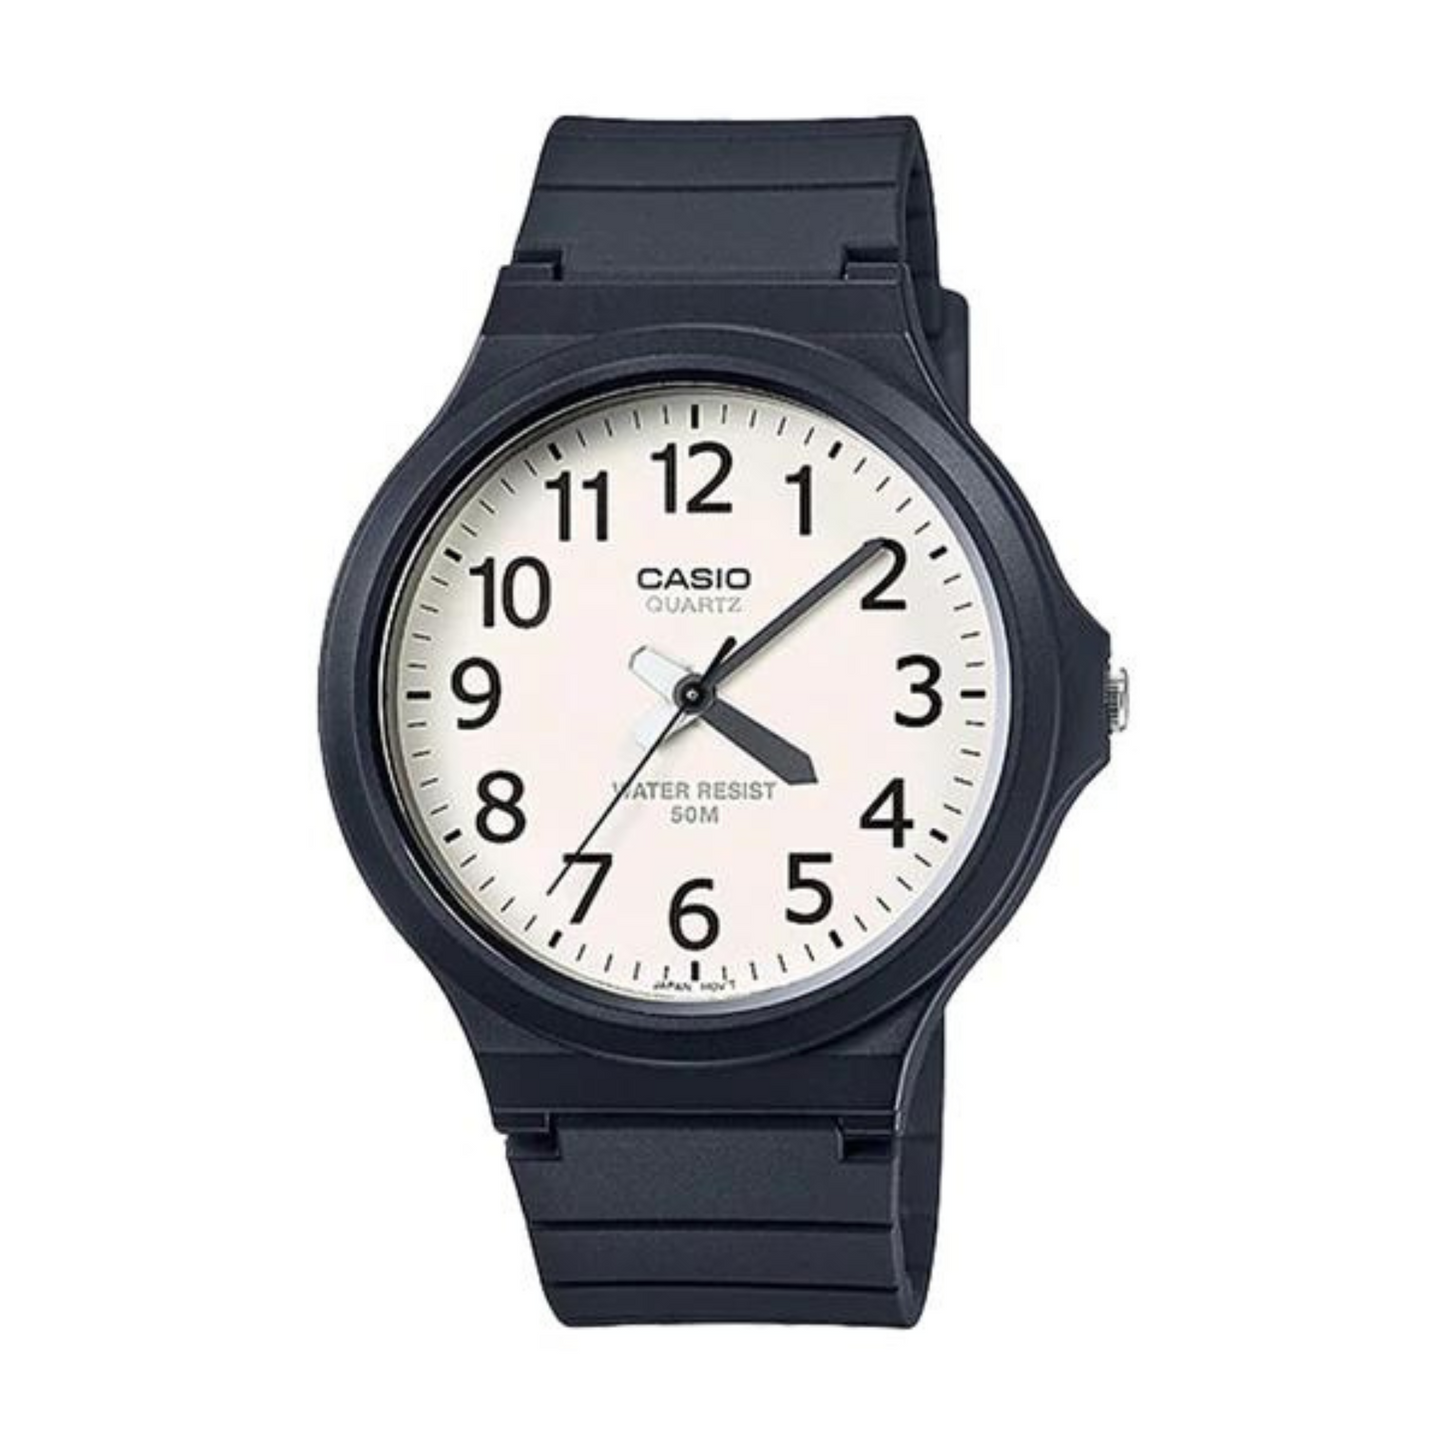 Reloj Casio hombre Modelo MW-240-7BV